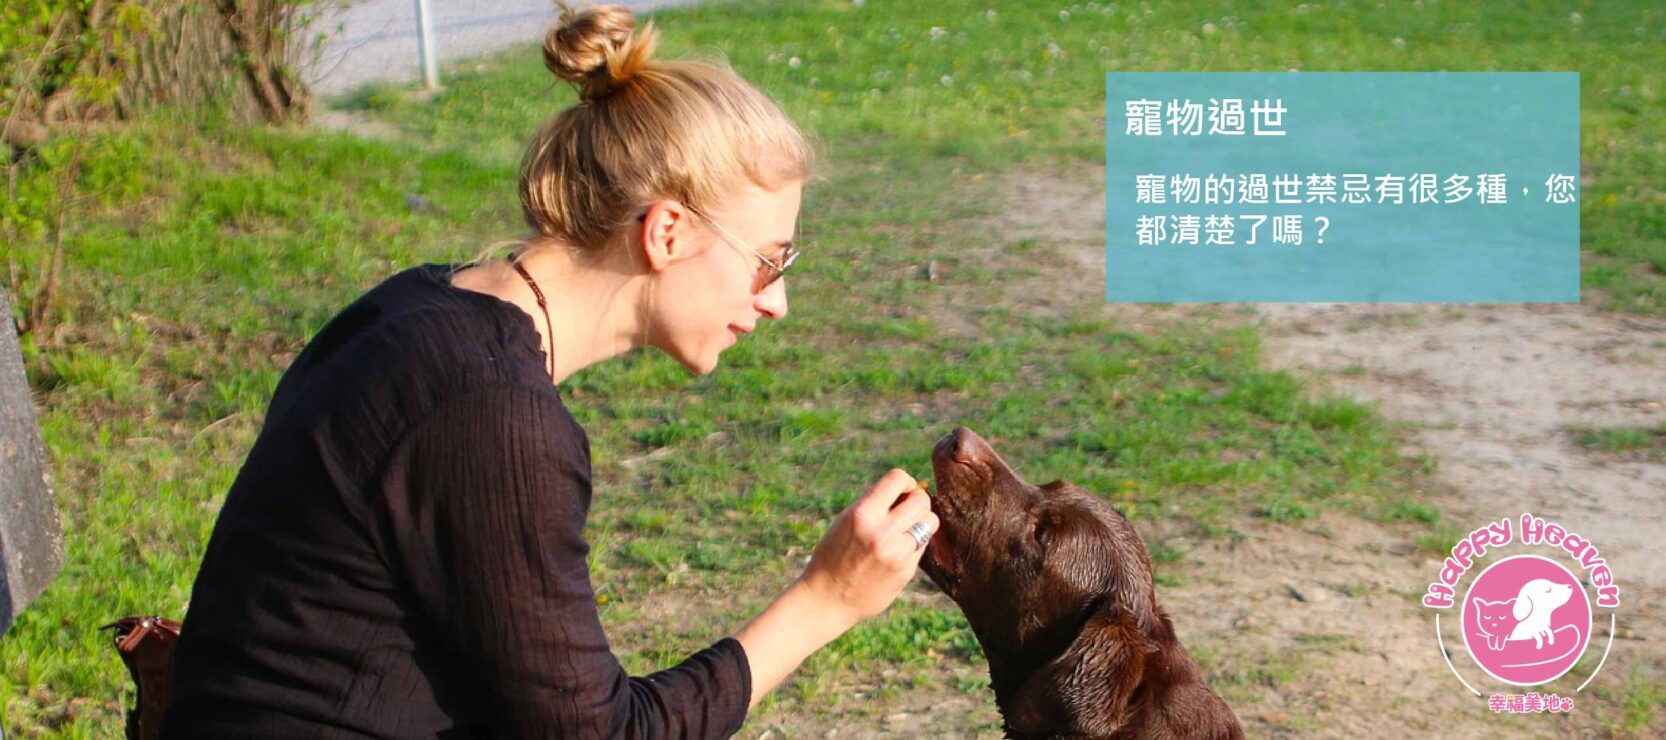 幸福美地目前全台灣唯一一間寵物合法的生命紀念園區,主要做寵物火化,希望己過世的寵物能到天堂去,不論自然死亡或安樂死,在這裡都可以得到安眠,在最後一哩路上也能夠得到尊重及禮儀,在他們最後帶著滿滿的愛離開,這就是我們成立的初心